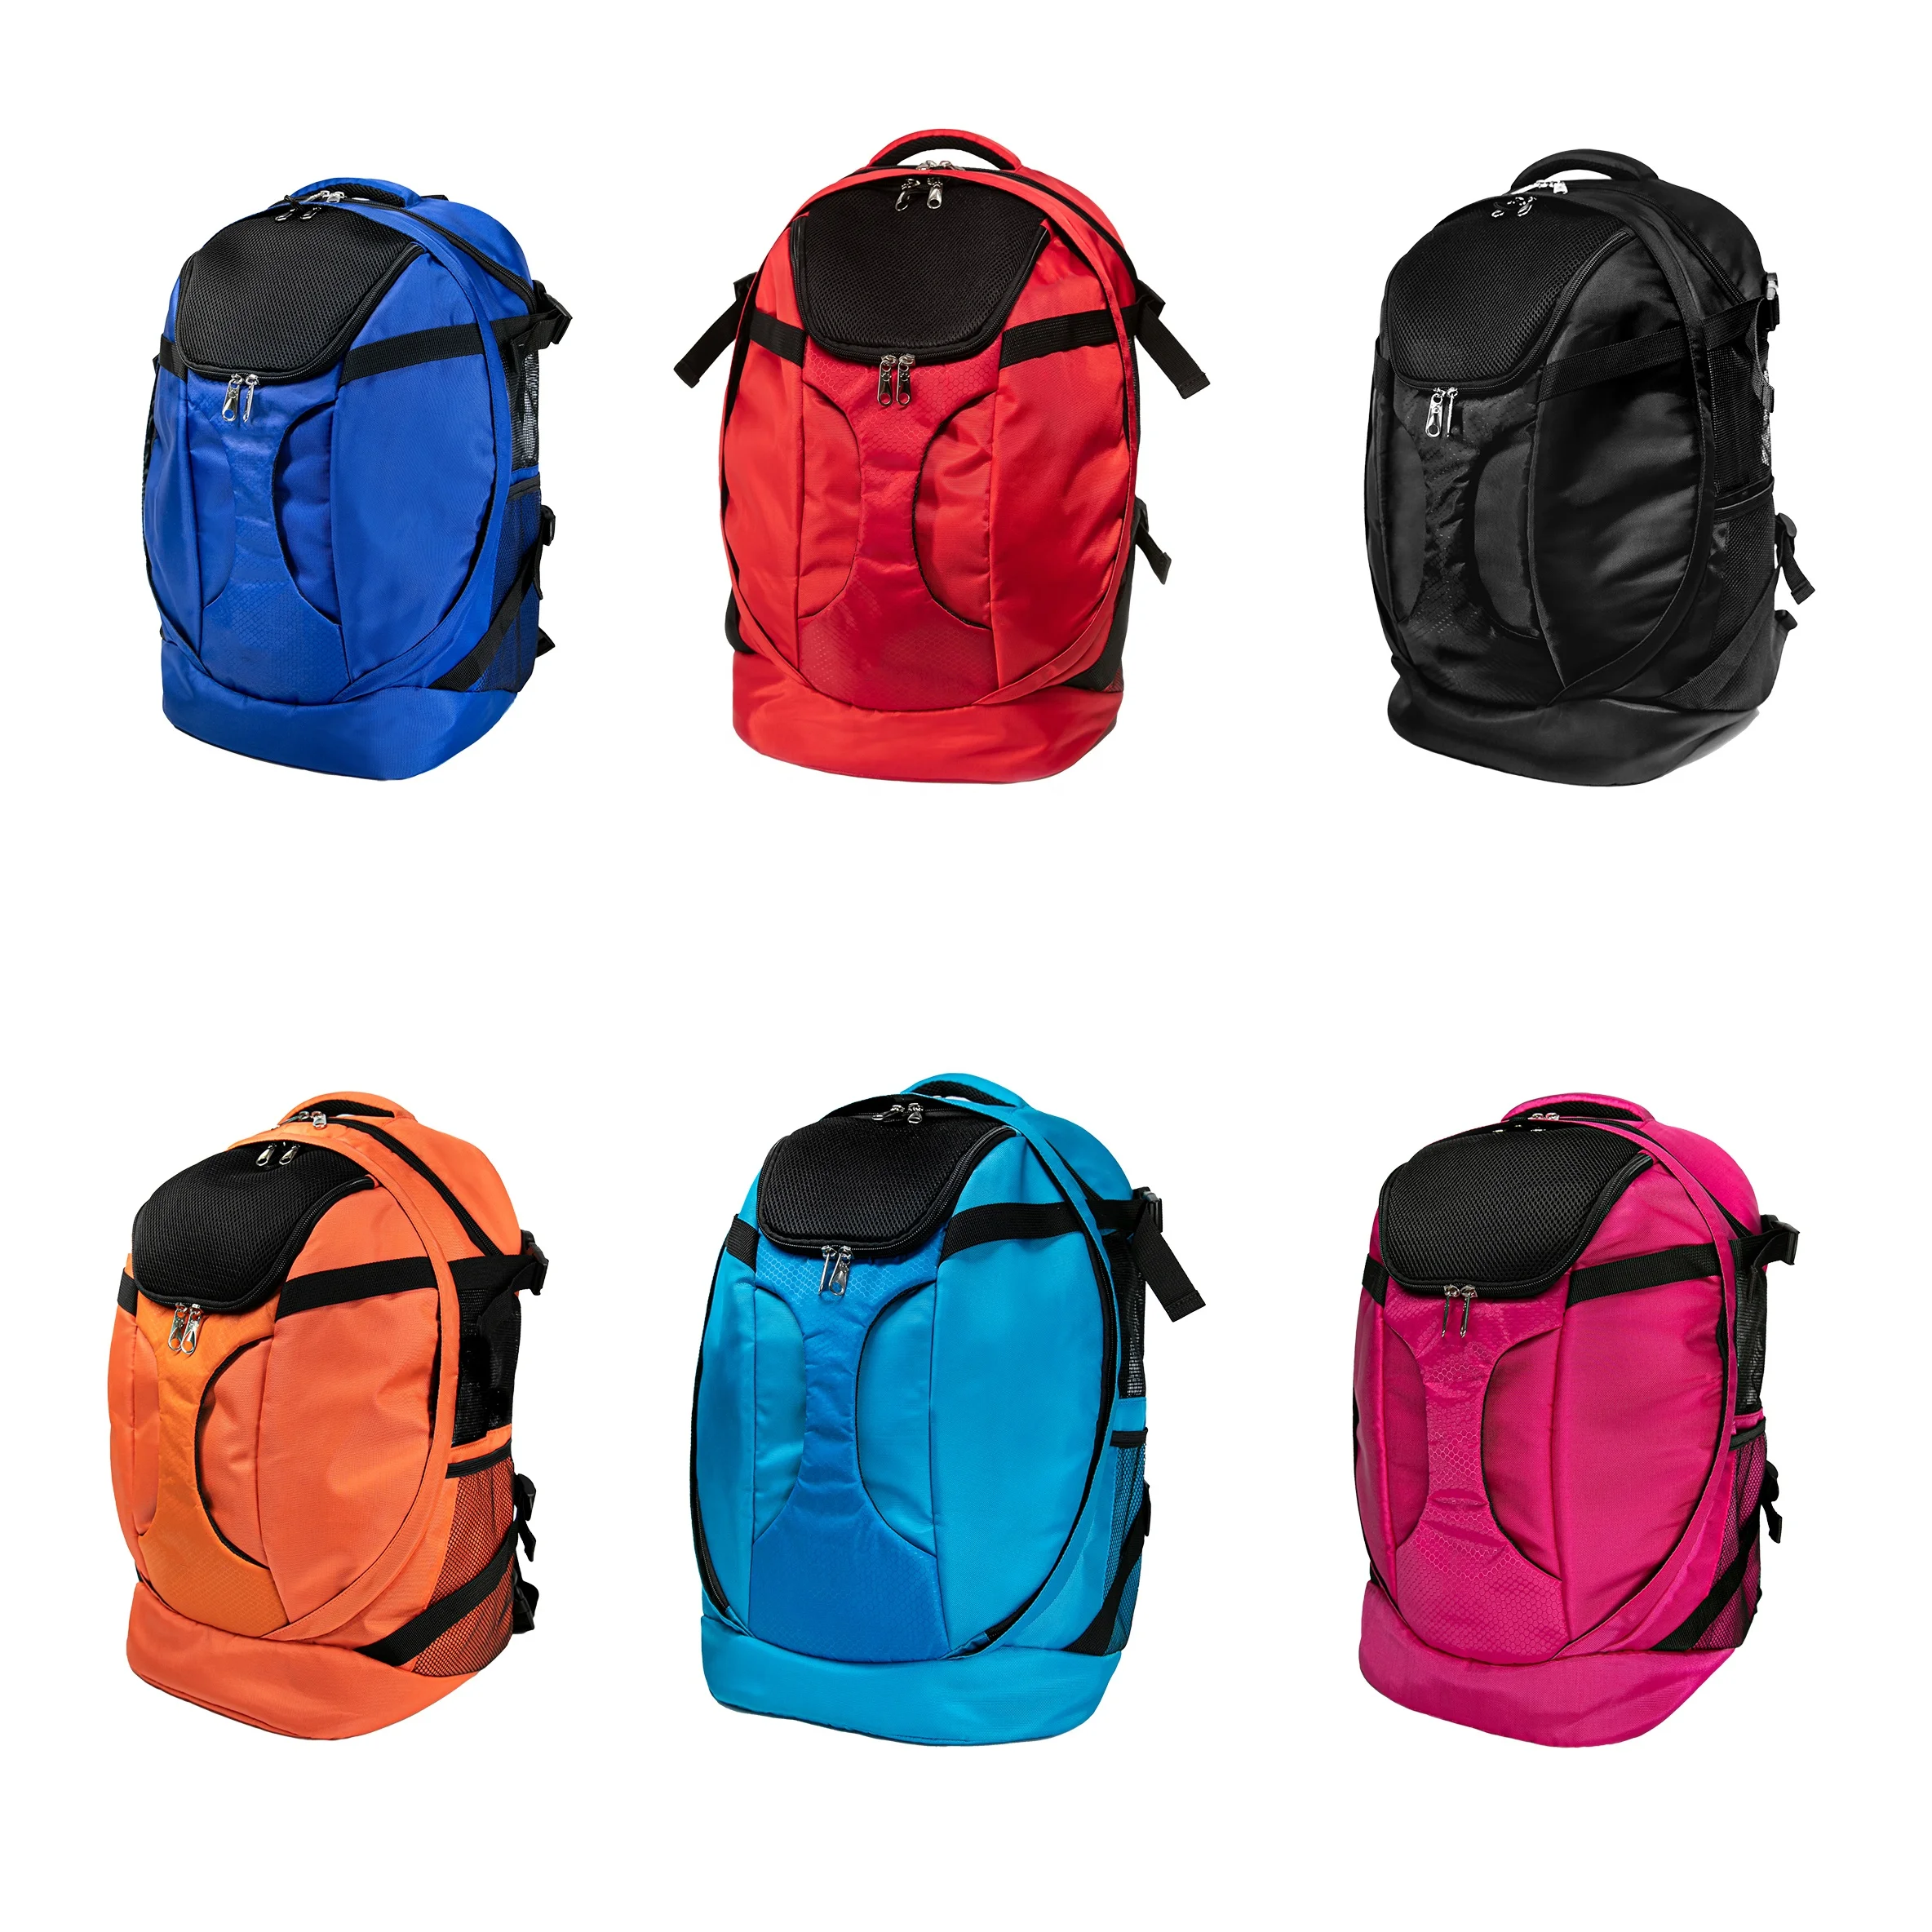 

Pet Bag Carrier Backpack Dog Backpack Cat Carrier bag Safety Features Soft Bottom Breathable Mesh, Black,grey,royal blue,light blue,red,orange,peach